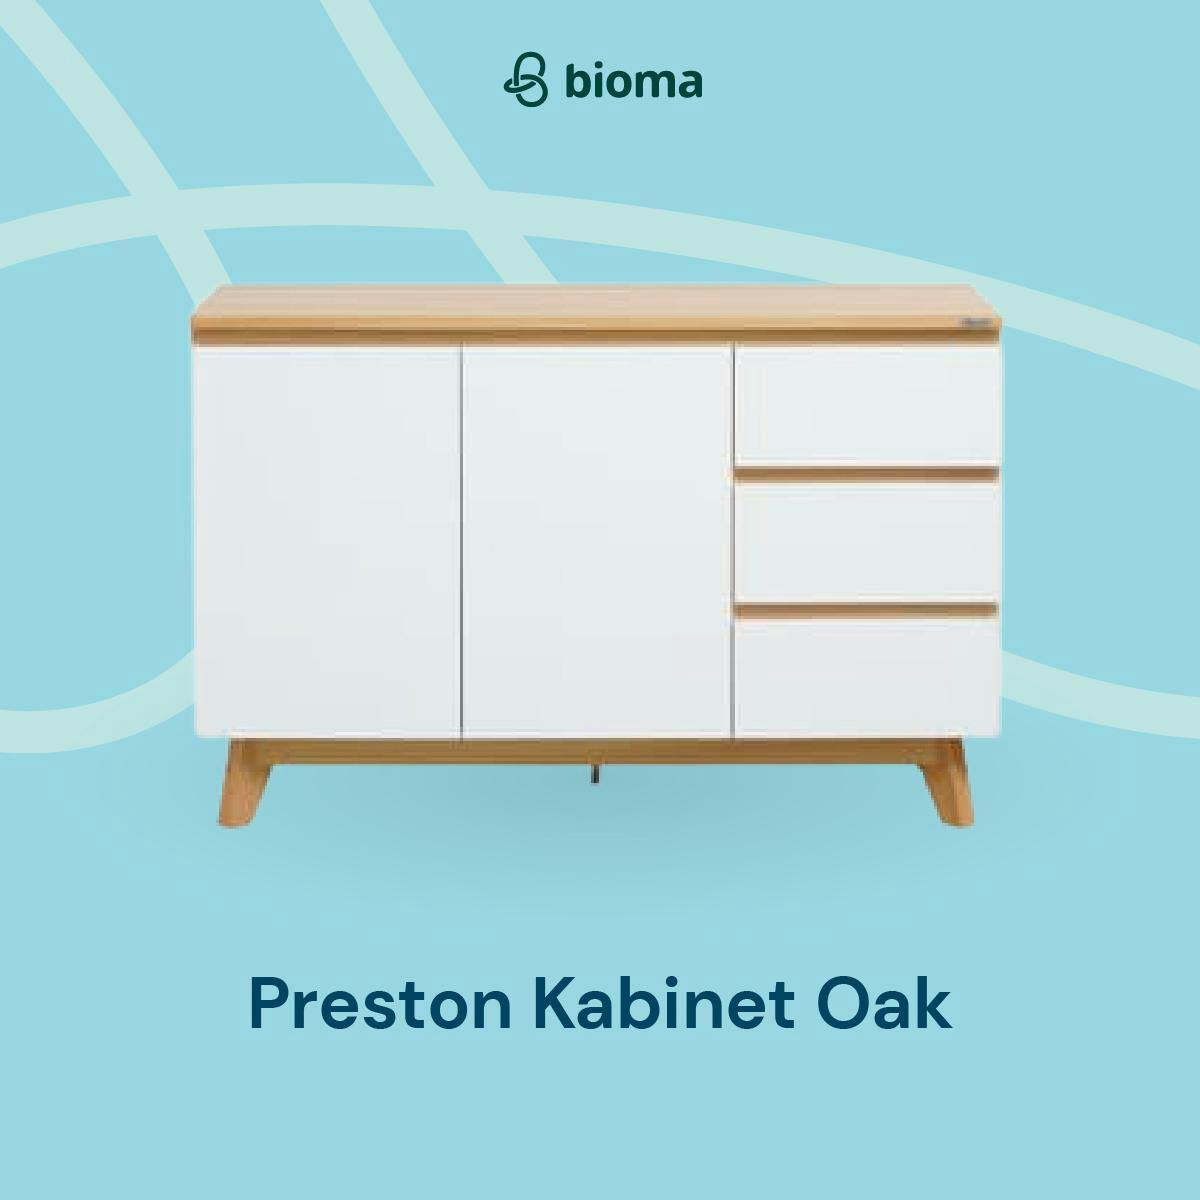 Preston Cabinet